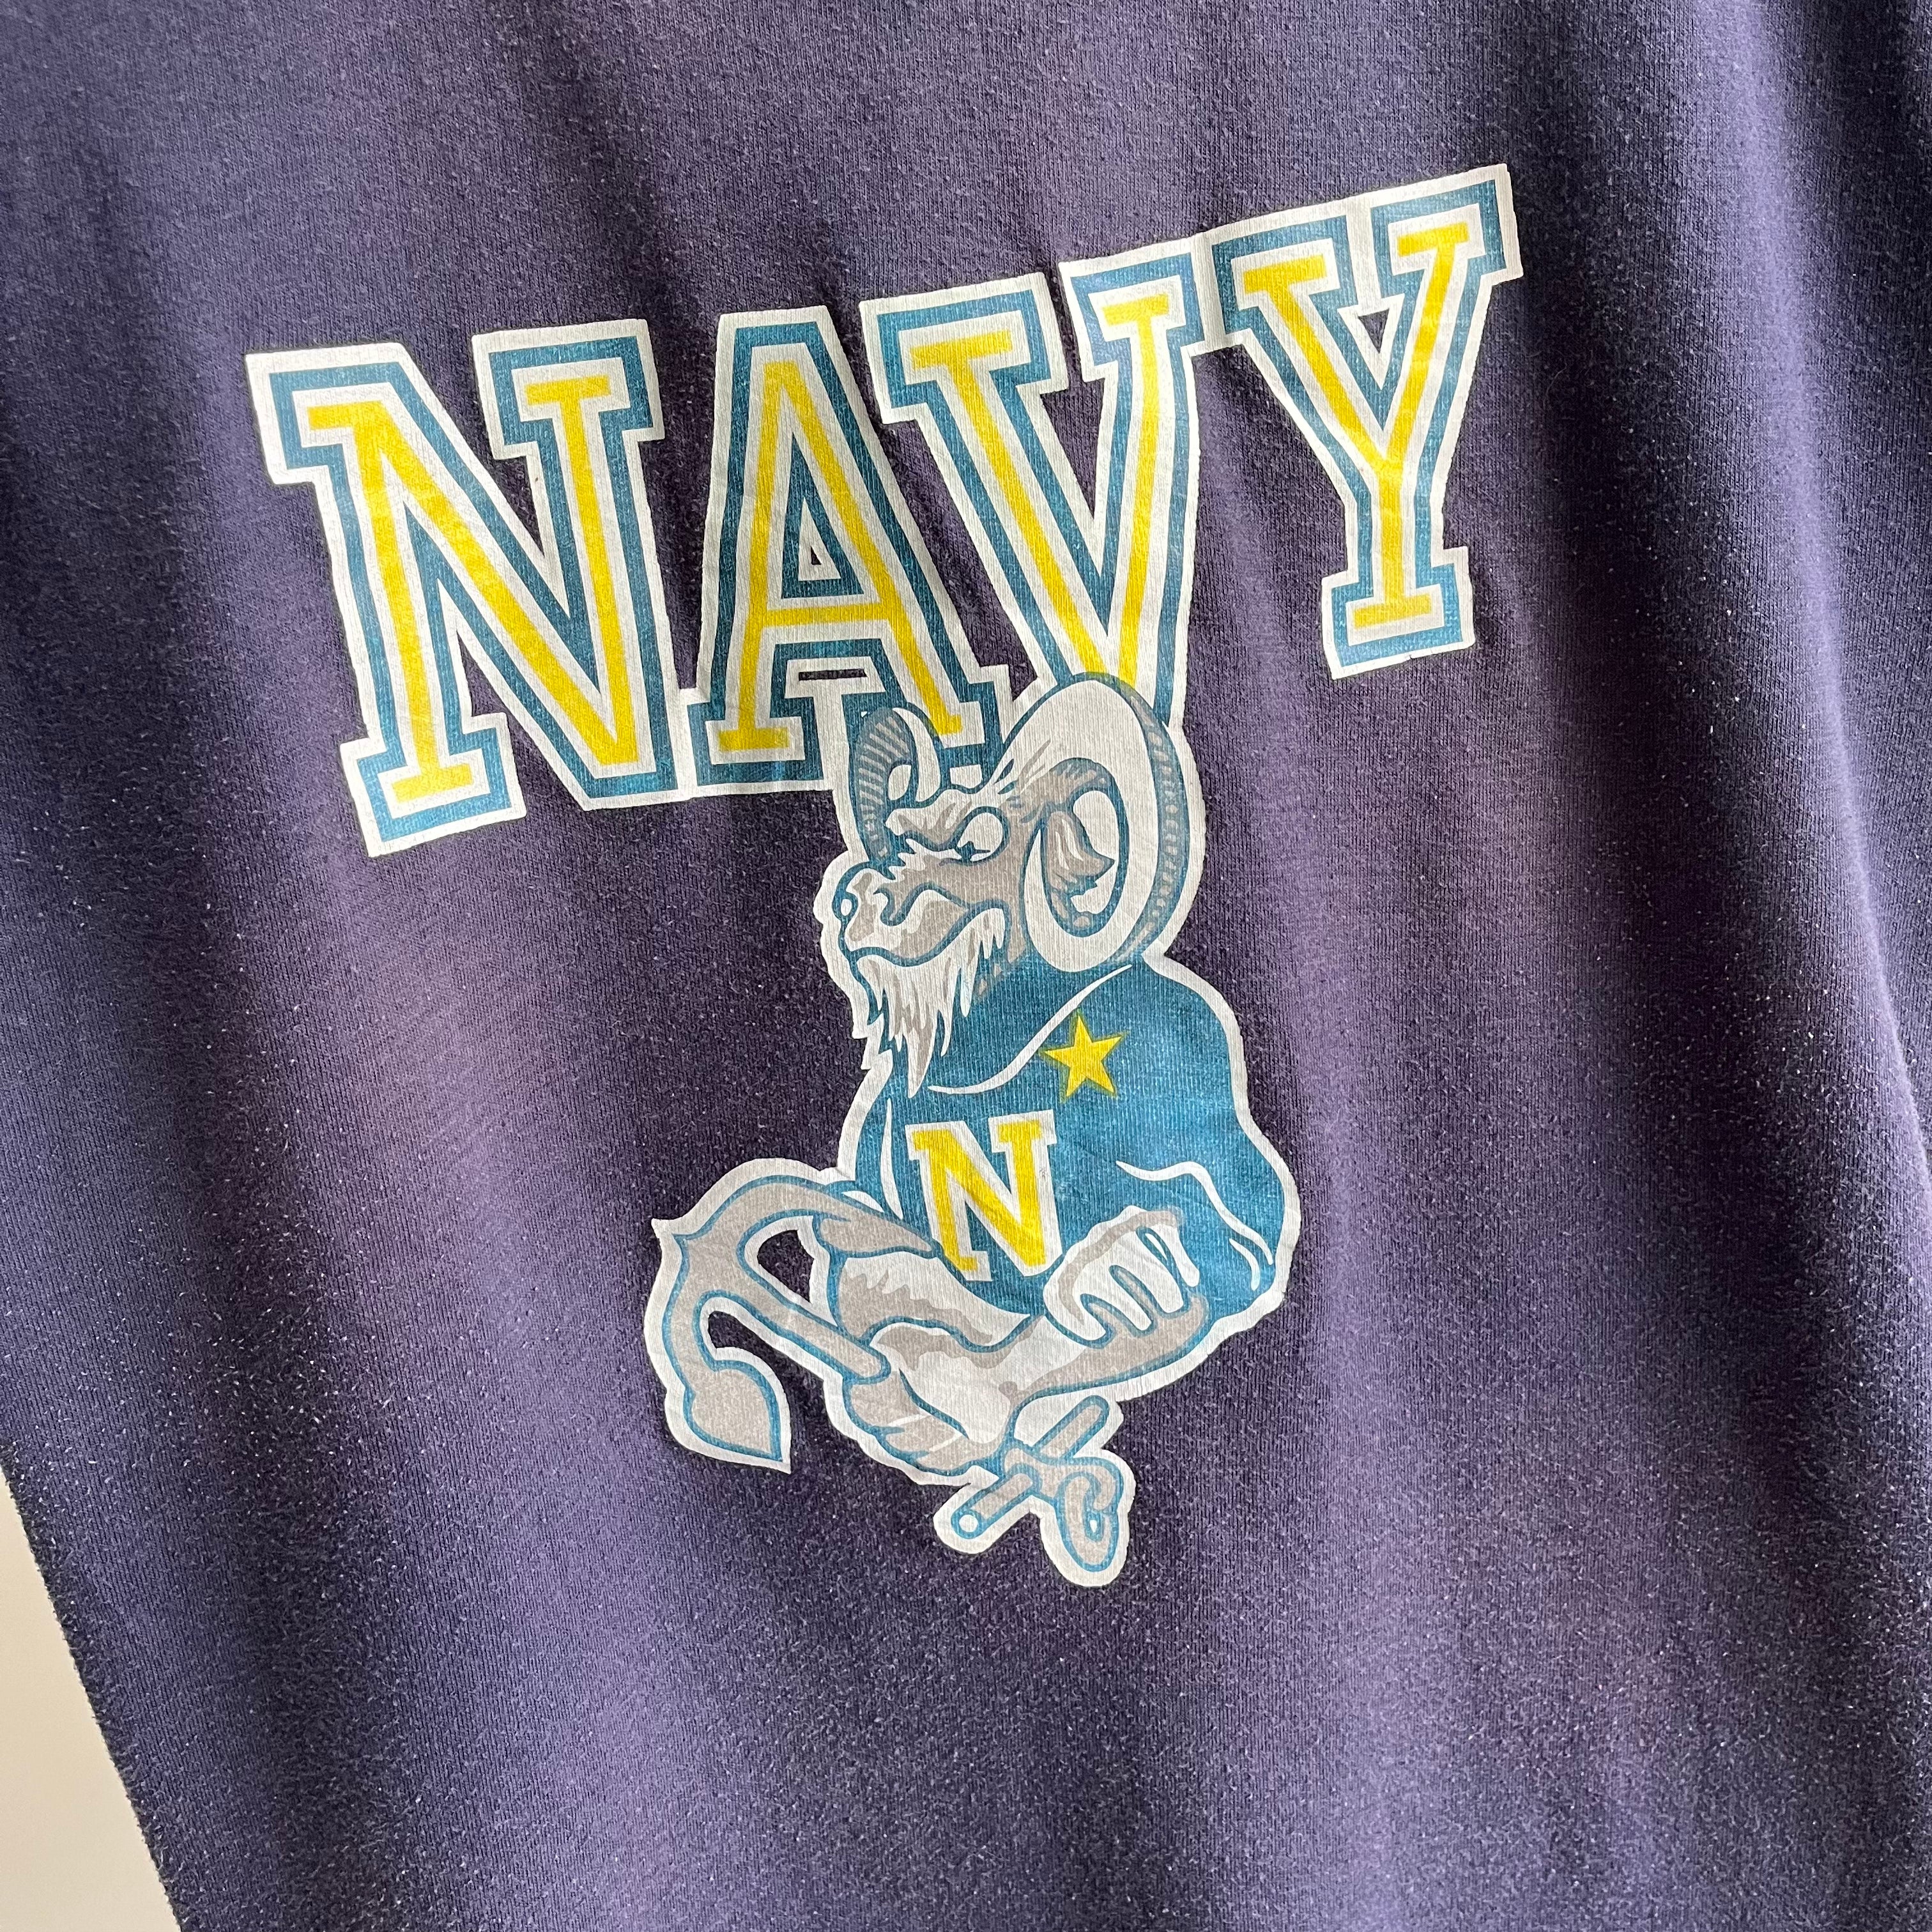 1970s United States Navy T-Shirt by Velva Sheen